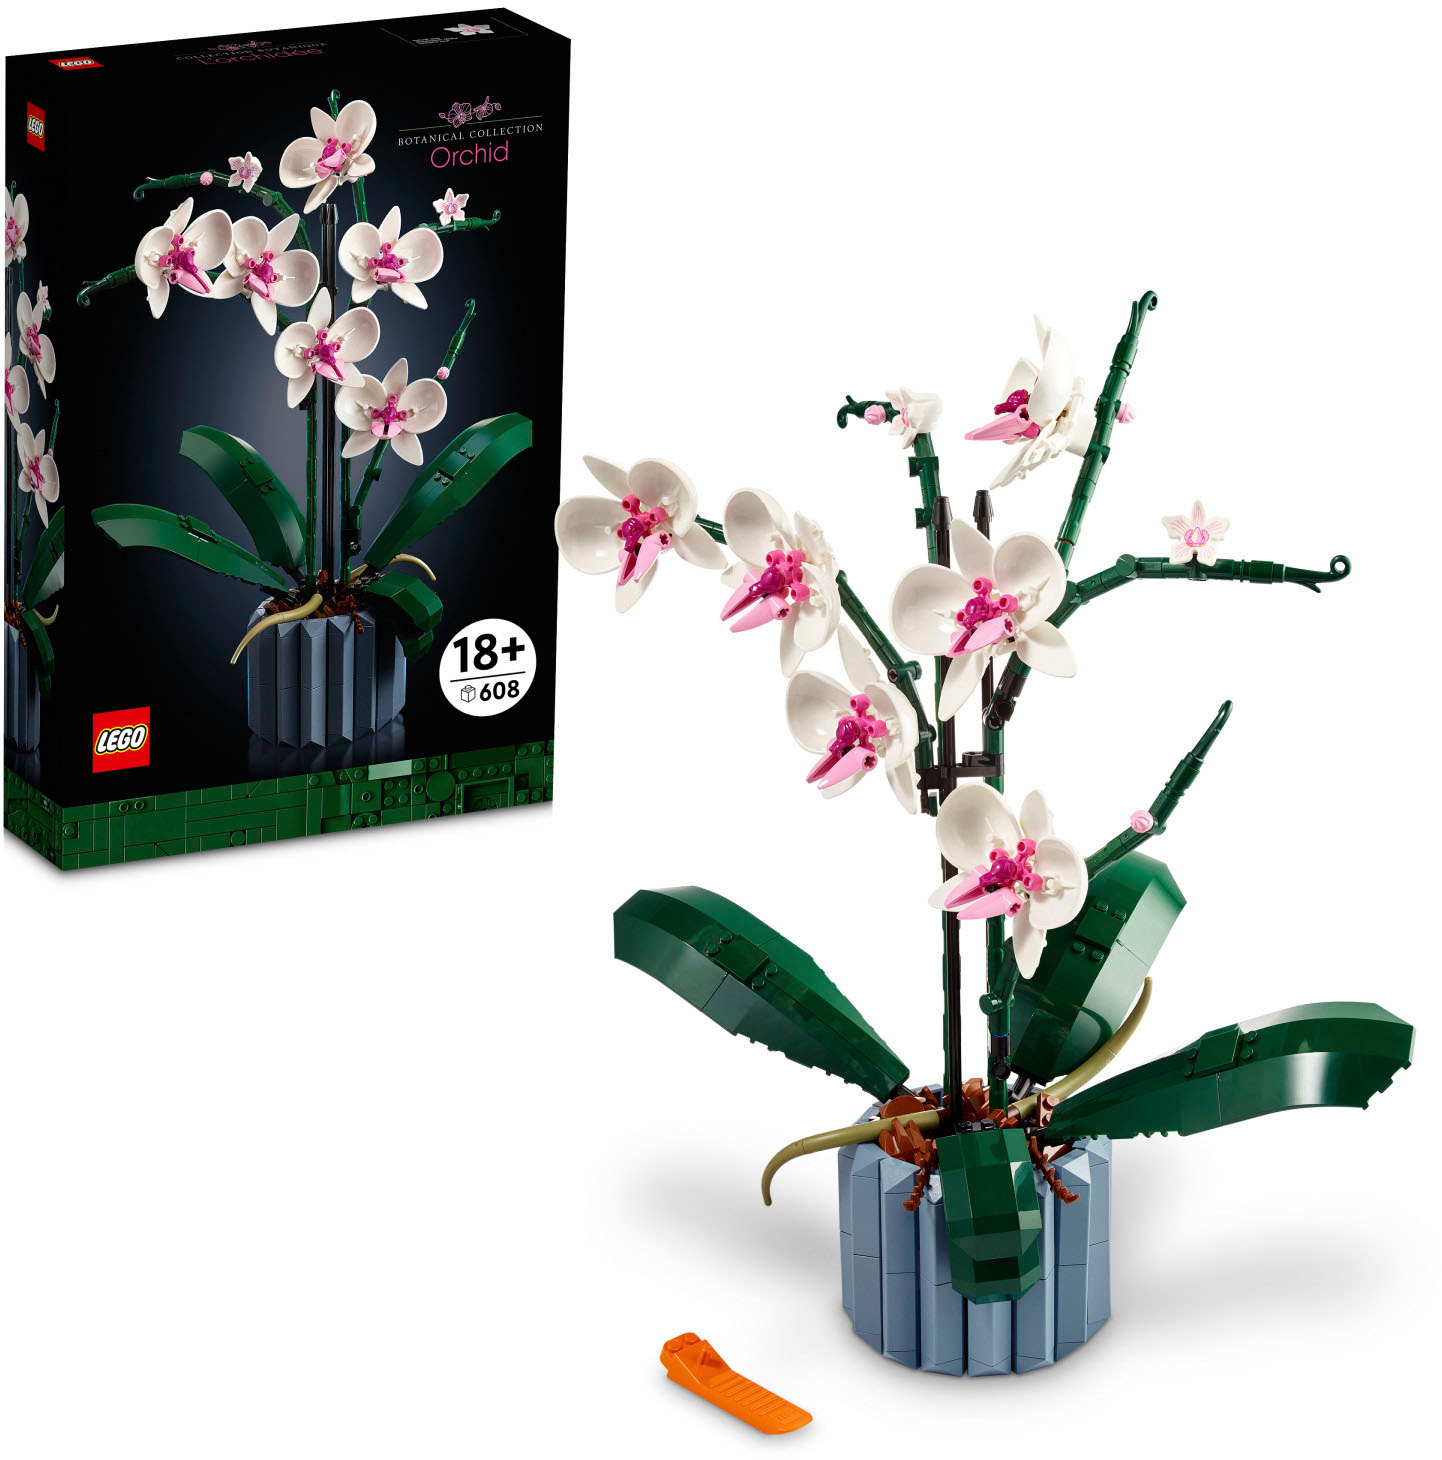 LEGO Orchid 10311 Plant Decor Toy Building Kit (608 Pieces) 6391548 ...